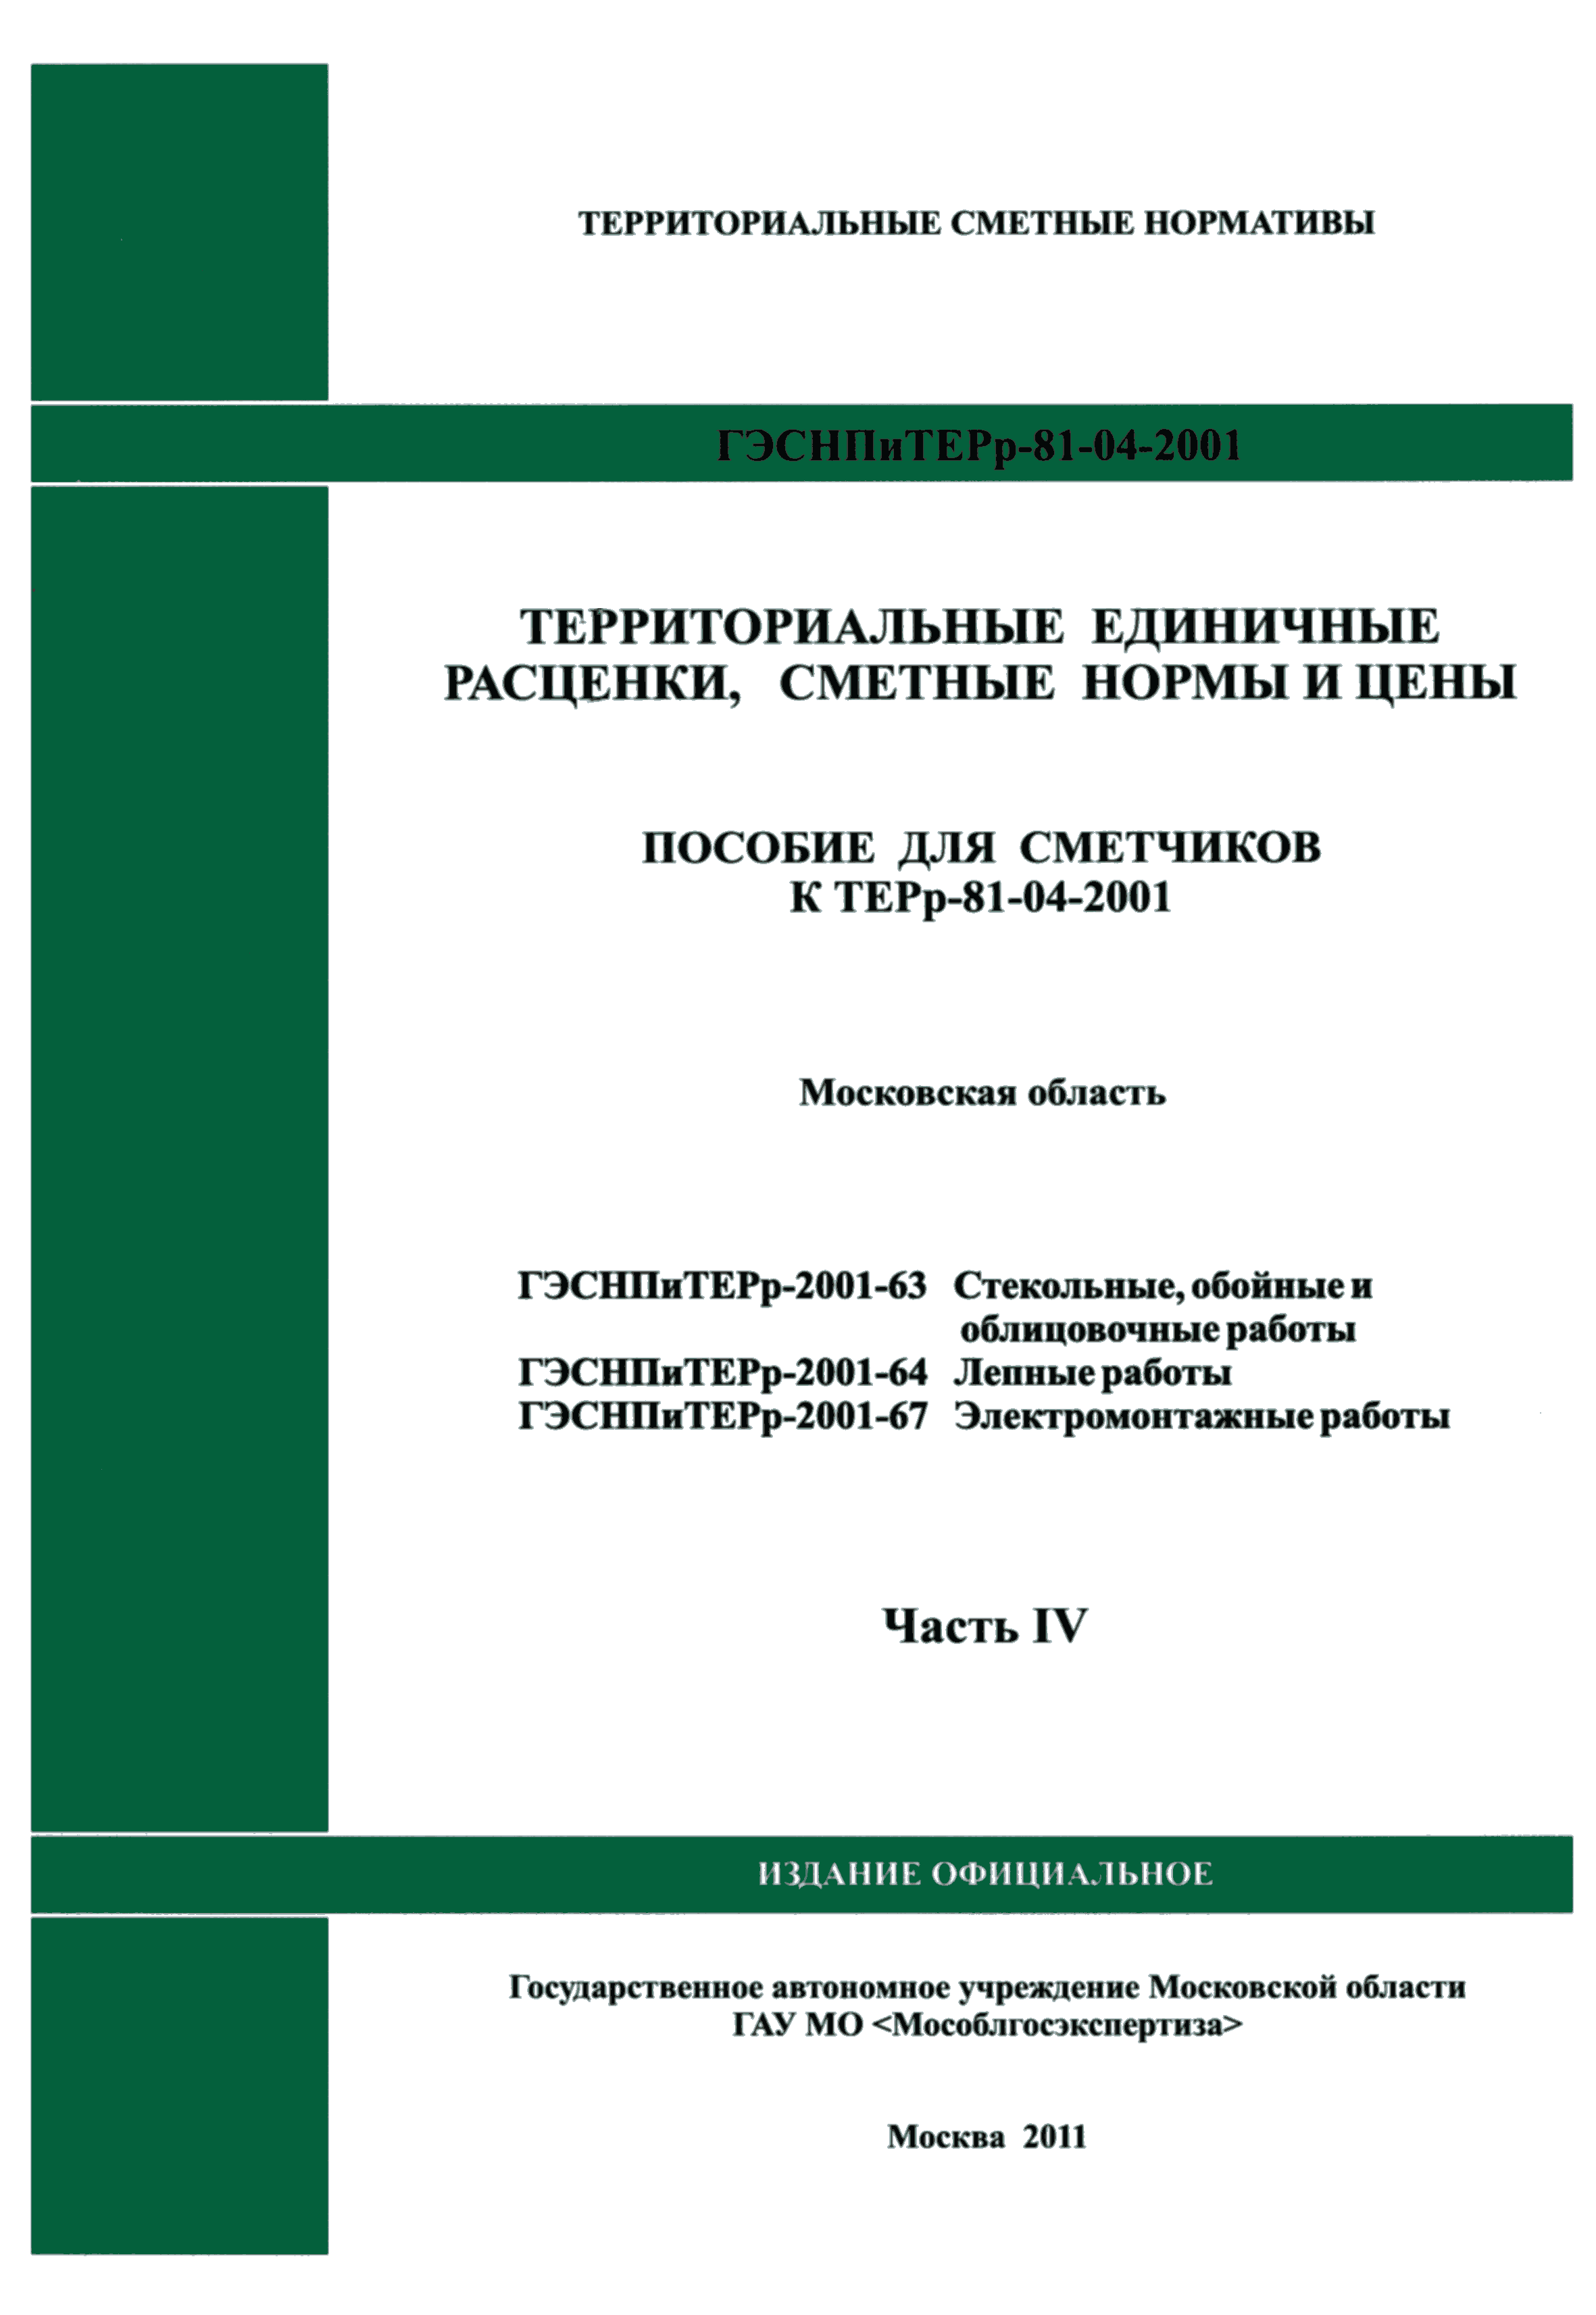 ГЭСНПиТЕРр 2001-67 Московской области